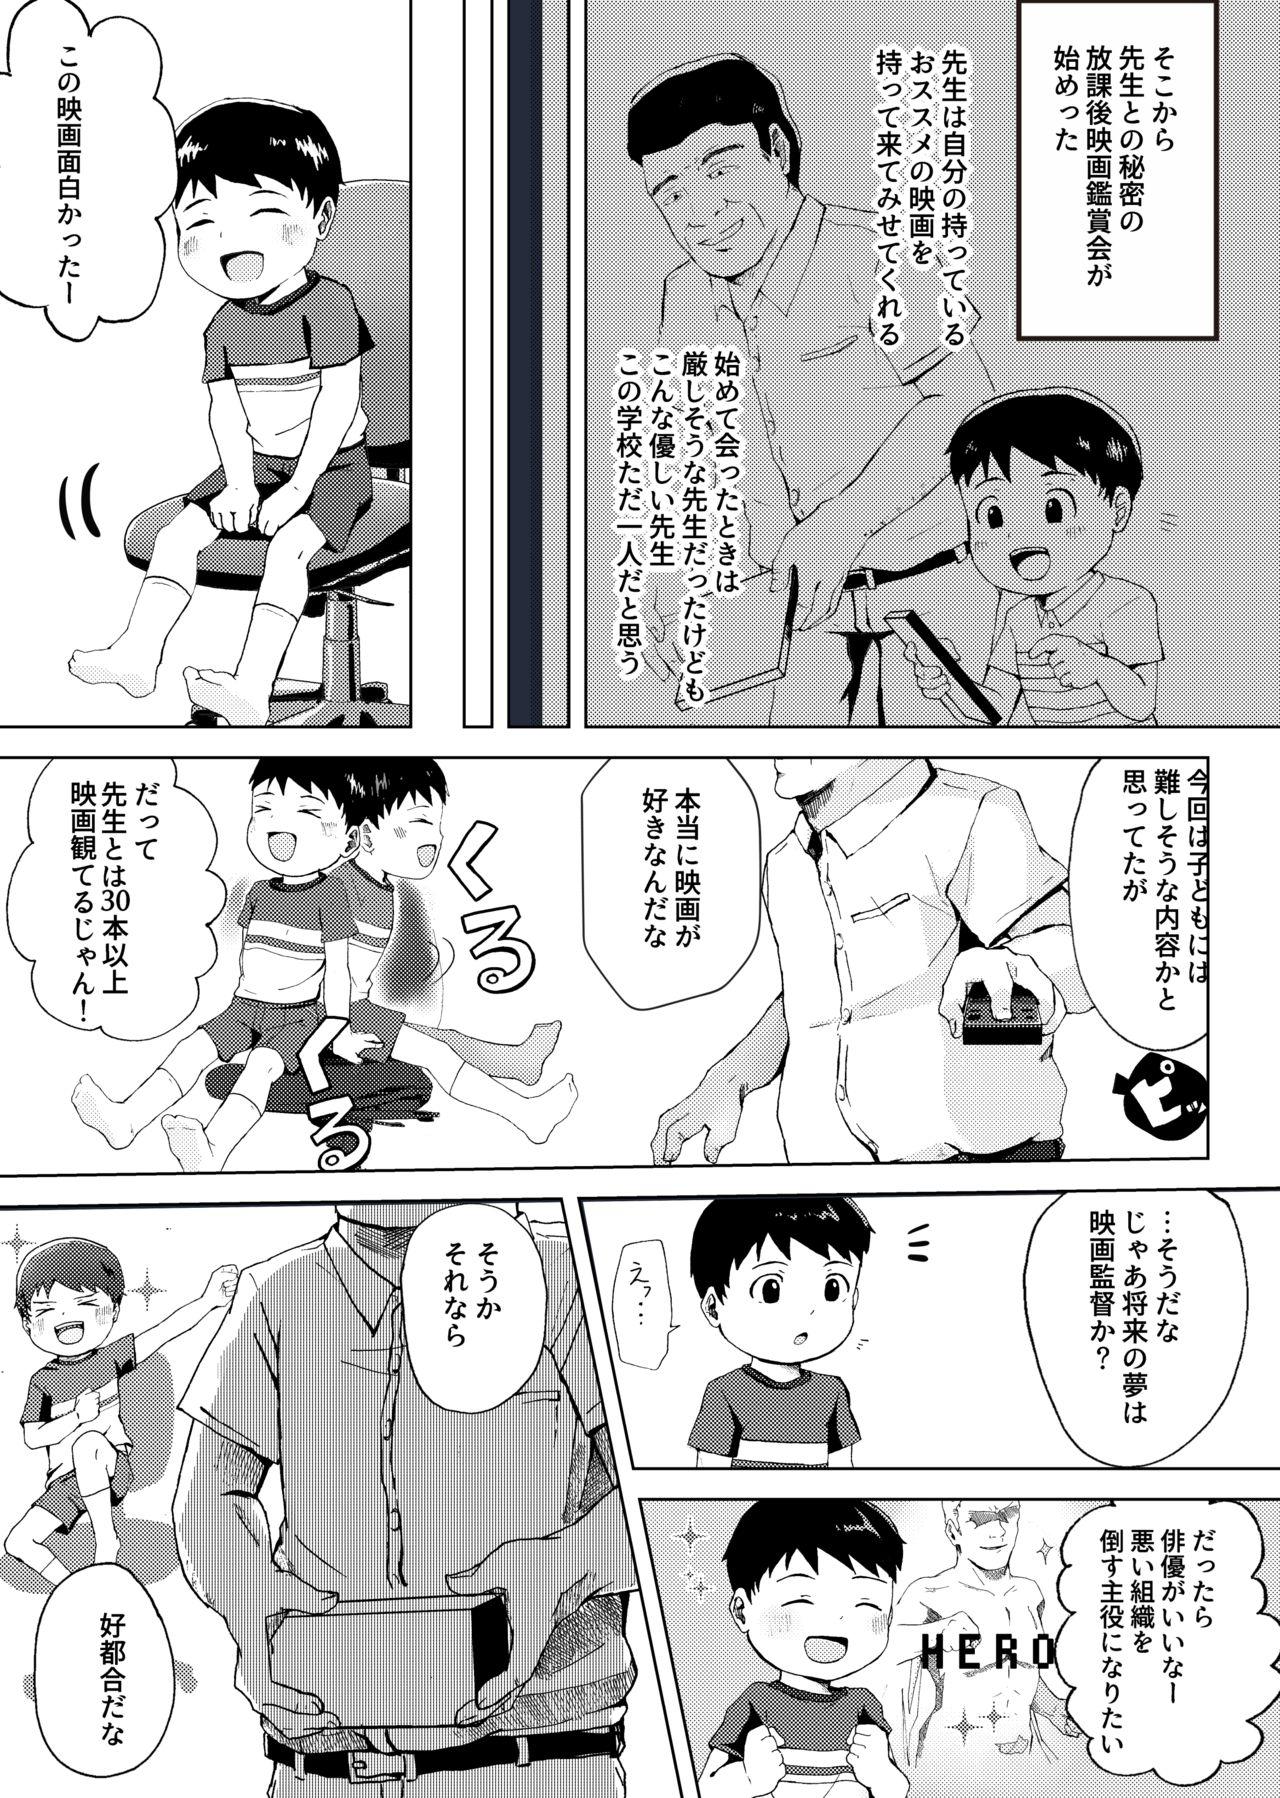 Toy Himitsu no Shichoukakushitsu - Original Oiled - Page 5